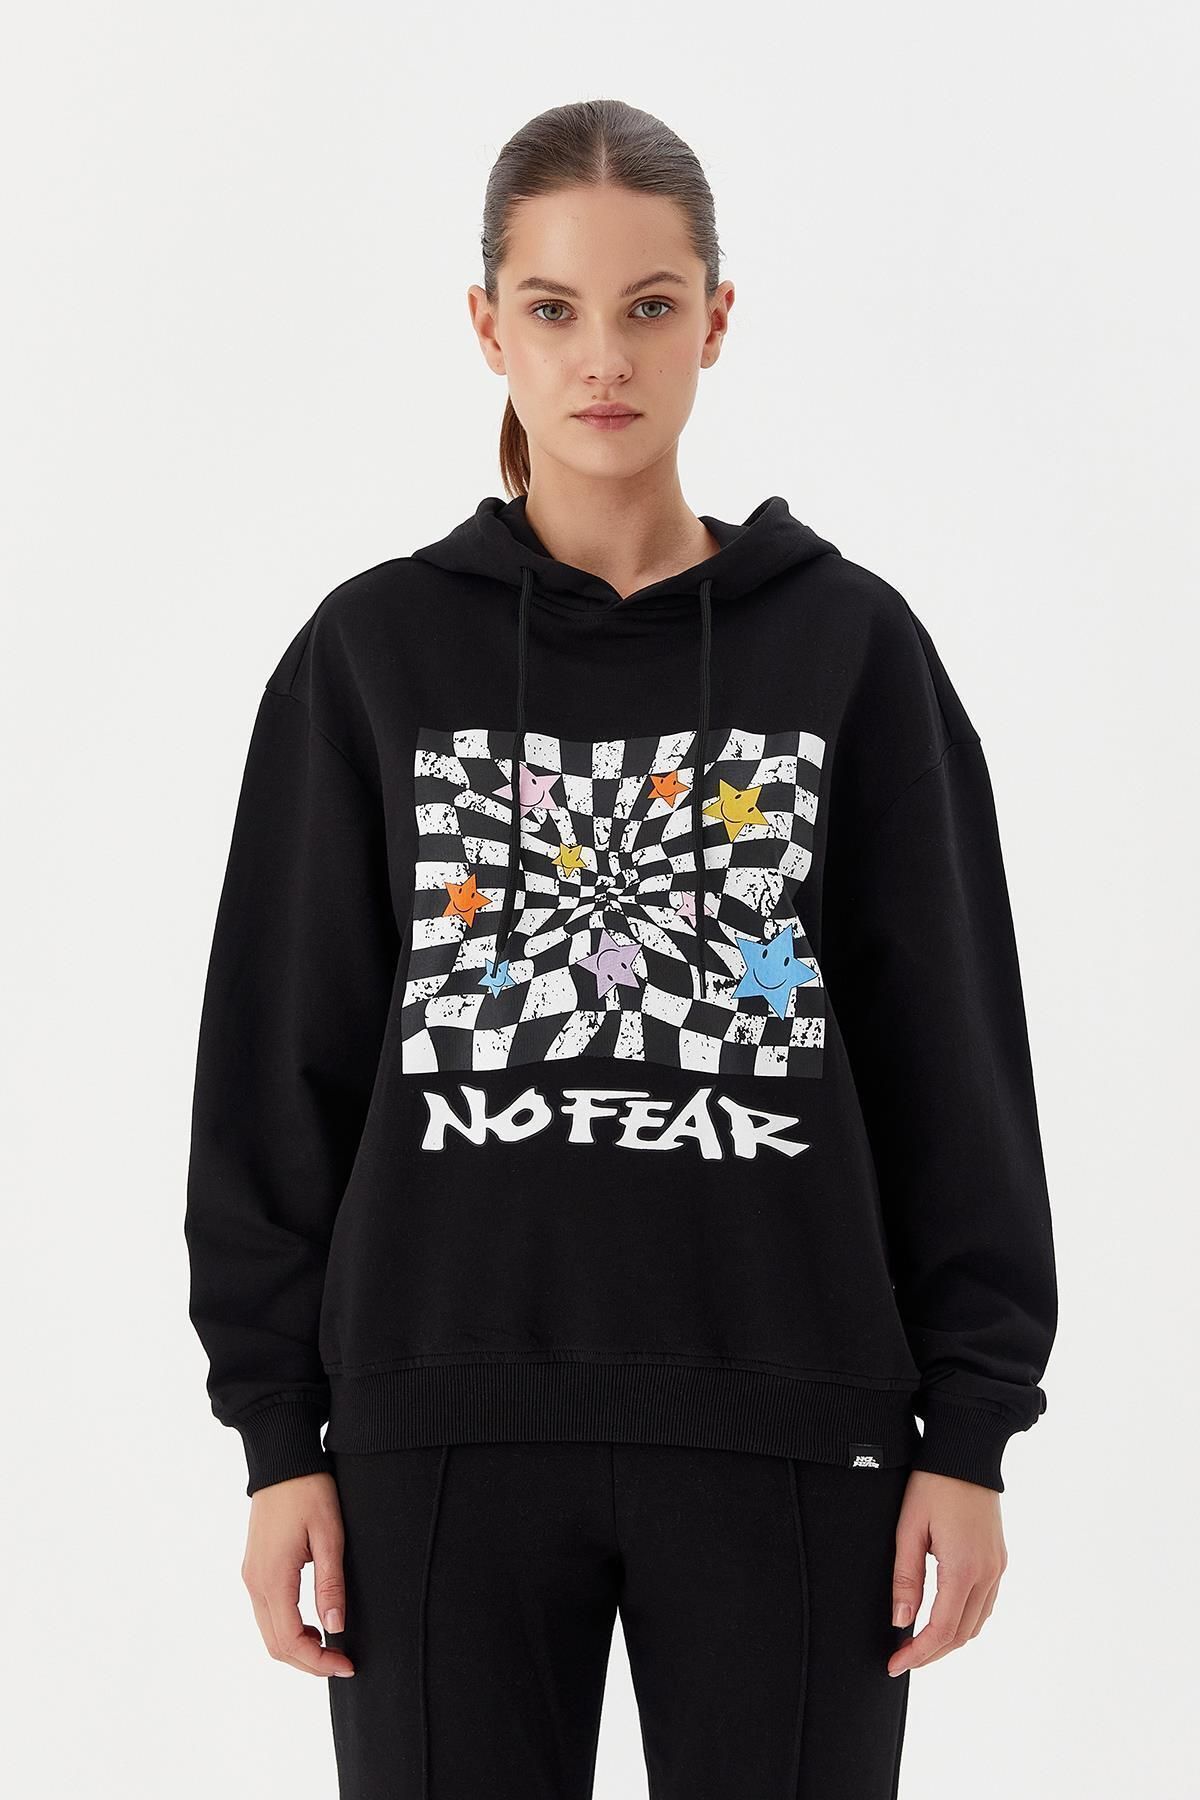 No Fear Kadın Sweatshirt Nfr-w500150